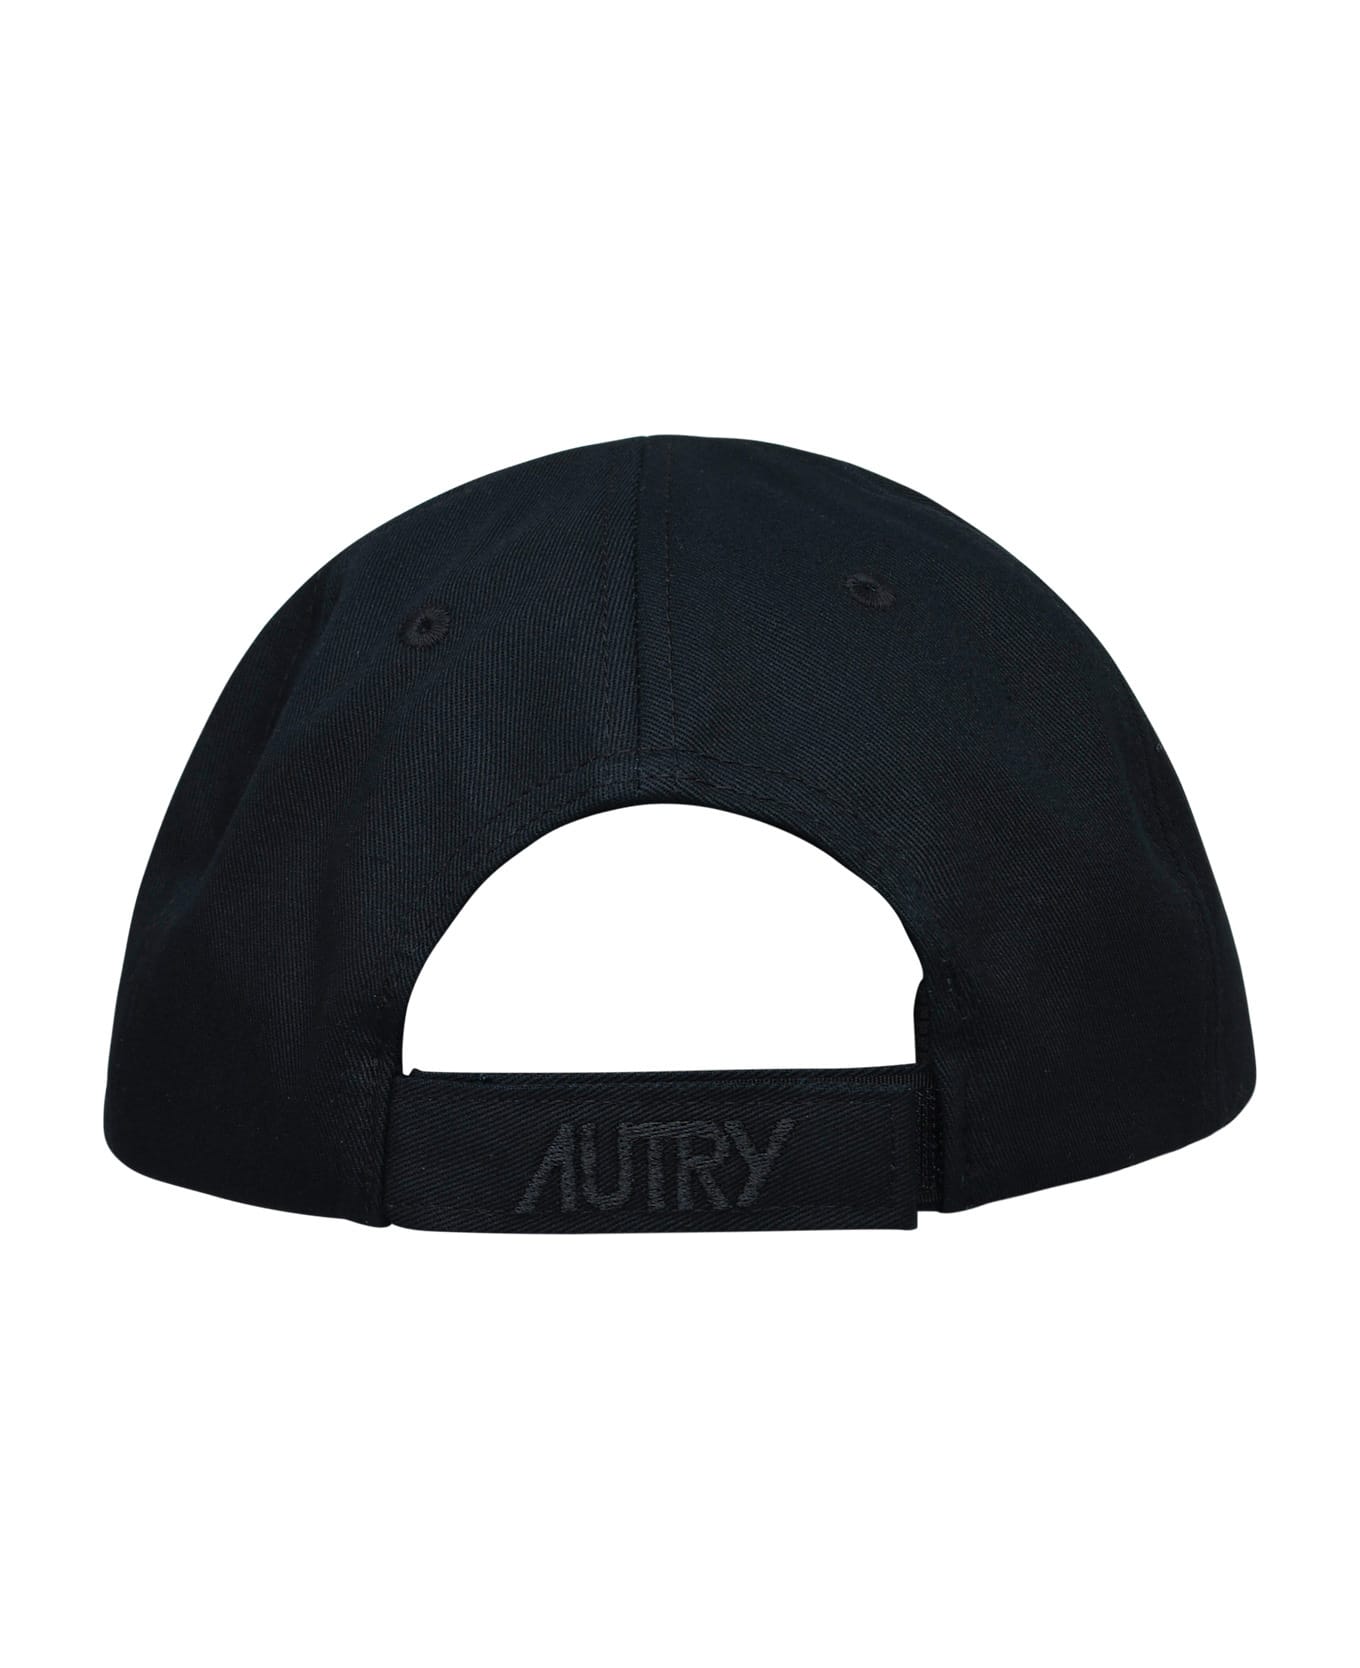 Autry Cotton Hat - Black